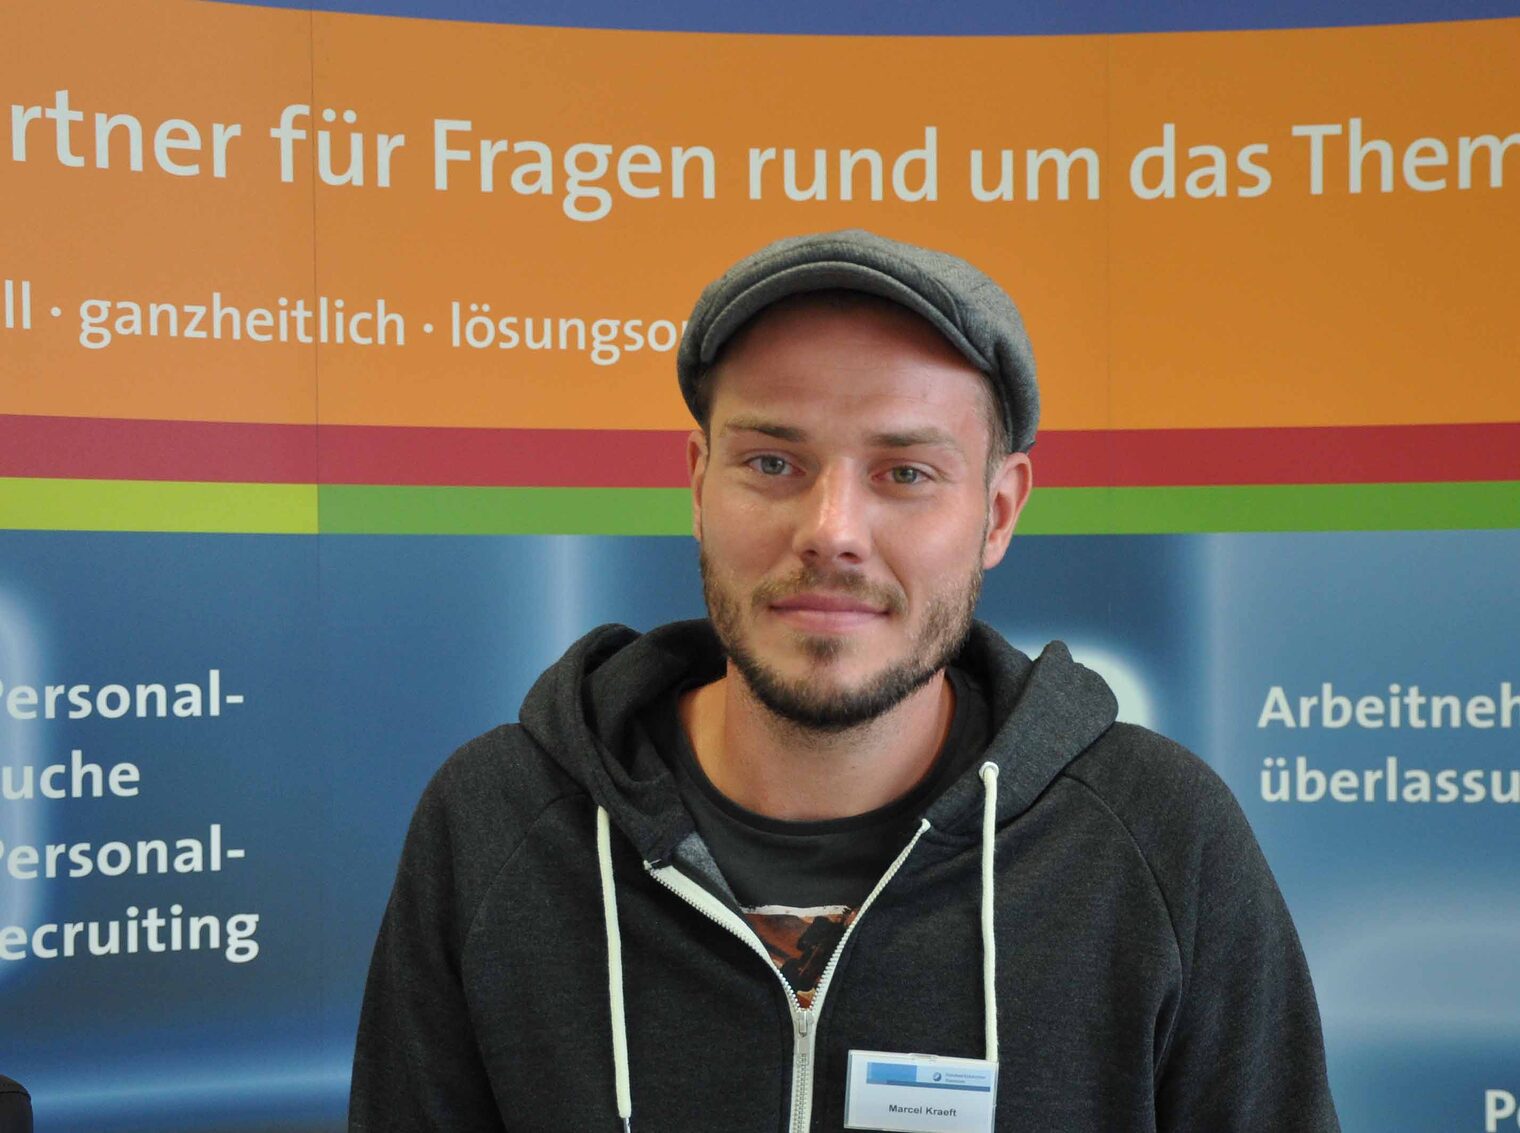 Marcel Kraeft, Kunde: "Die Online-Fachkräftebörse hat mir nach meiner Bundeswehrzeit zu einem neuen Job verholfen. Einfach klasse!"